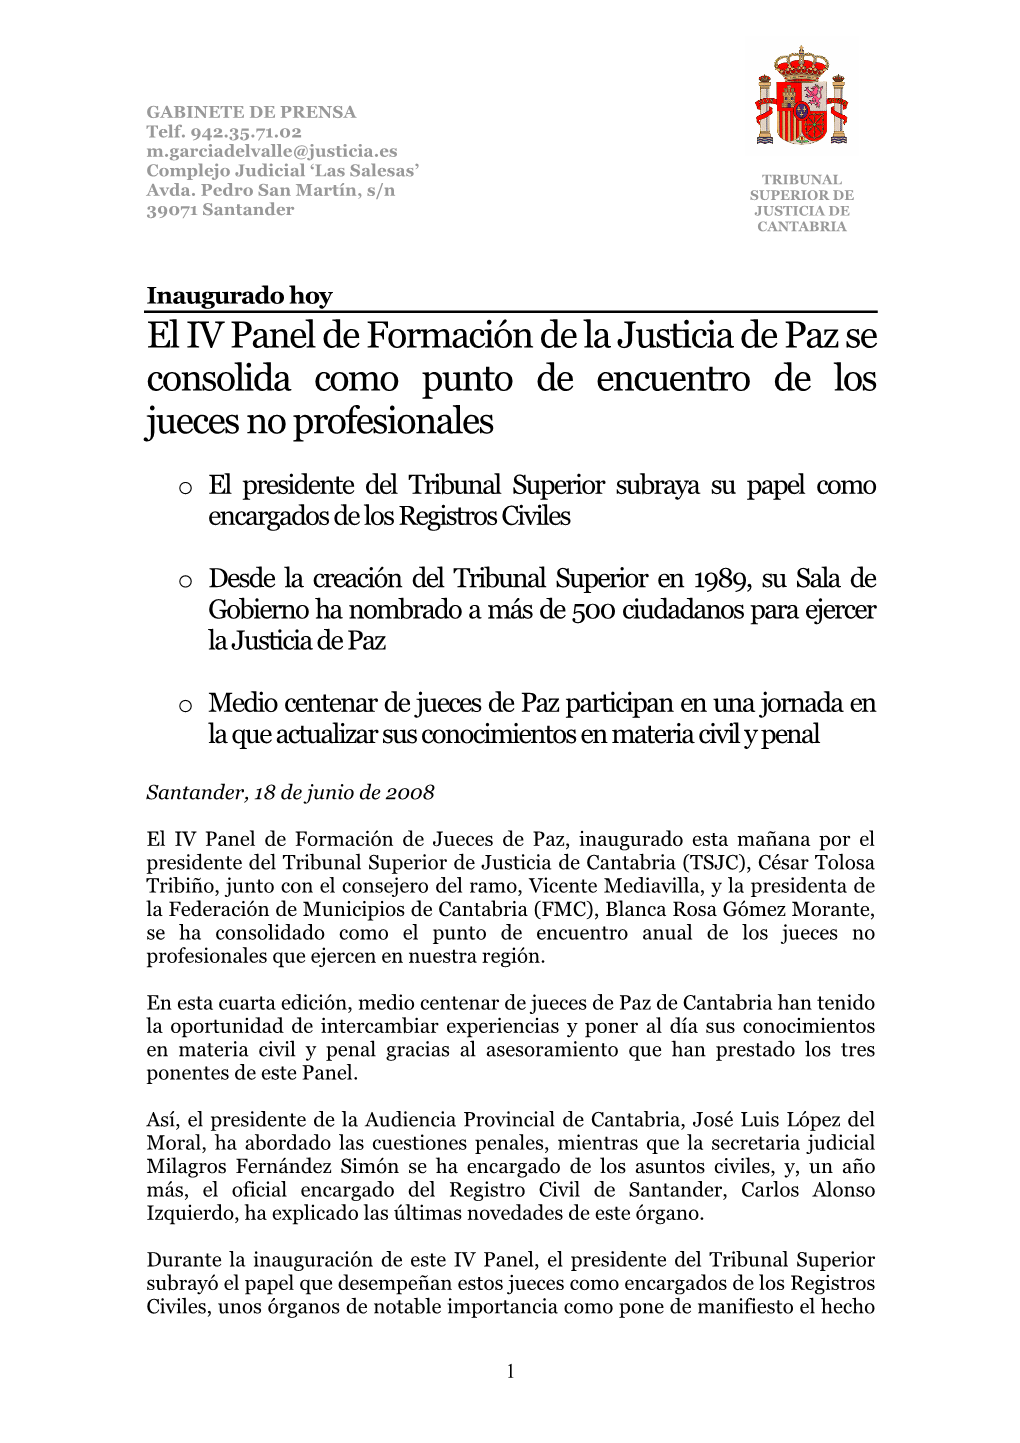 El IV Panel De Formación De La Justicia De Paz Se Consolida Como Punto De Encuentro De Los Jueces No Profesionales